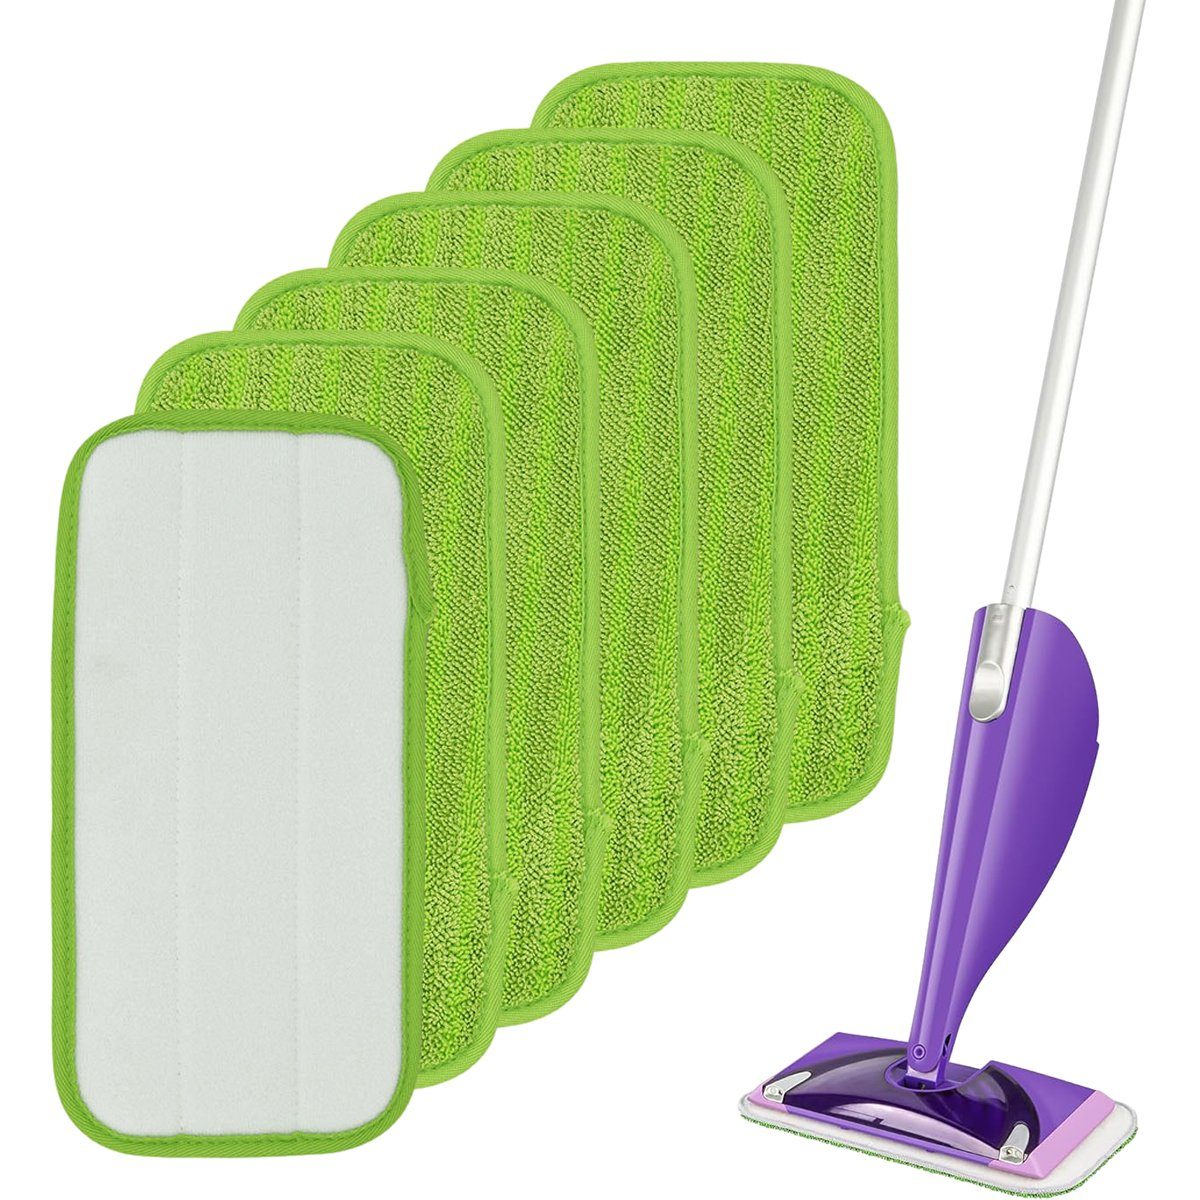 Jormftte Mop Pads,Mop Microfaser Reinigung Pads,für Flachmopp,Klettmopp Wischbezug grün